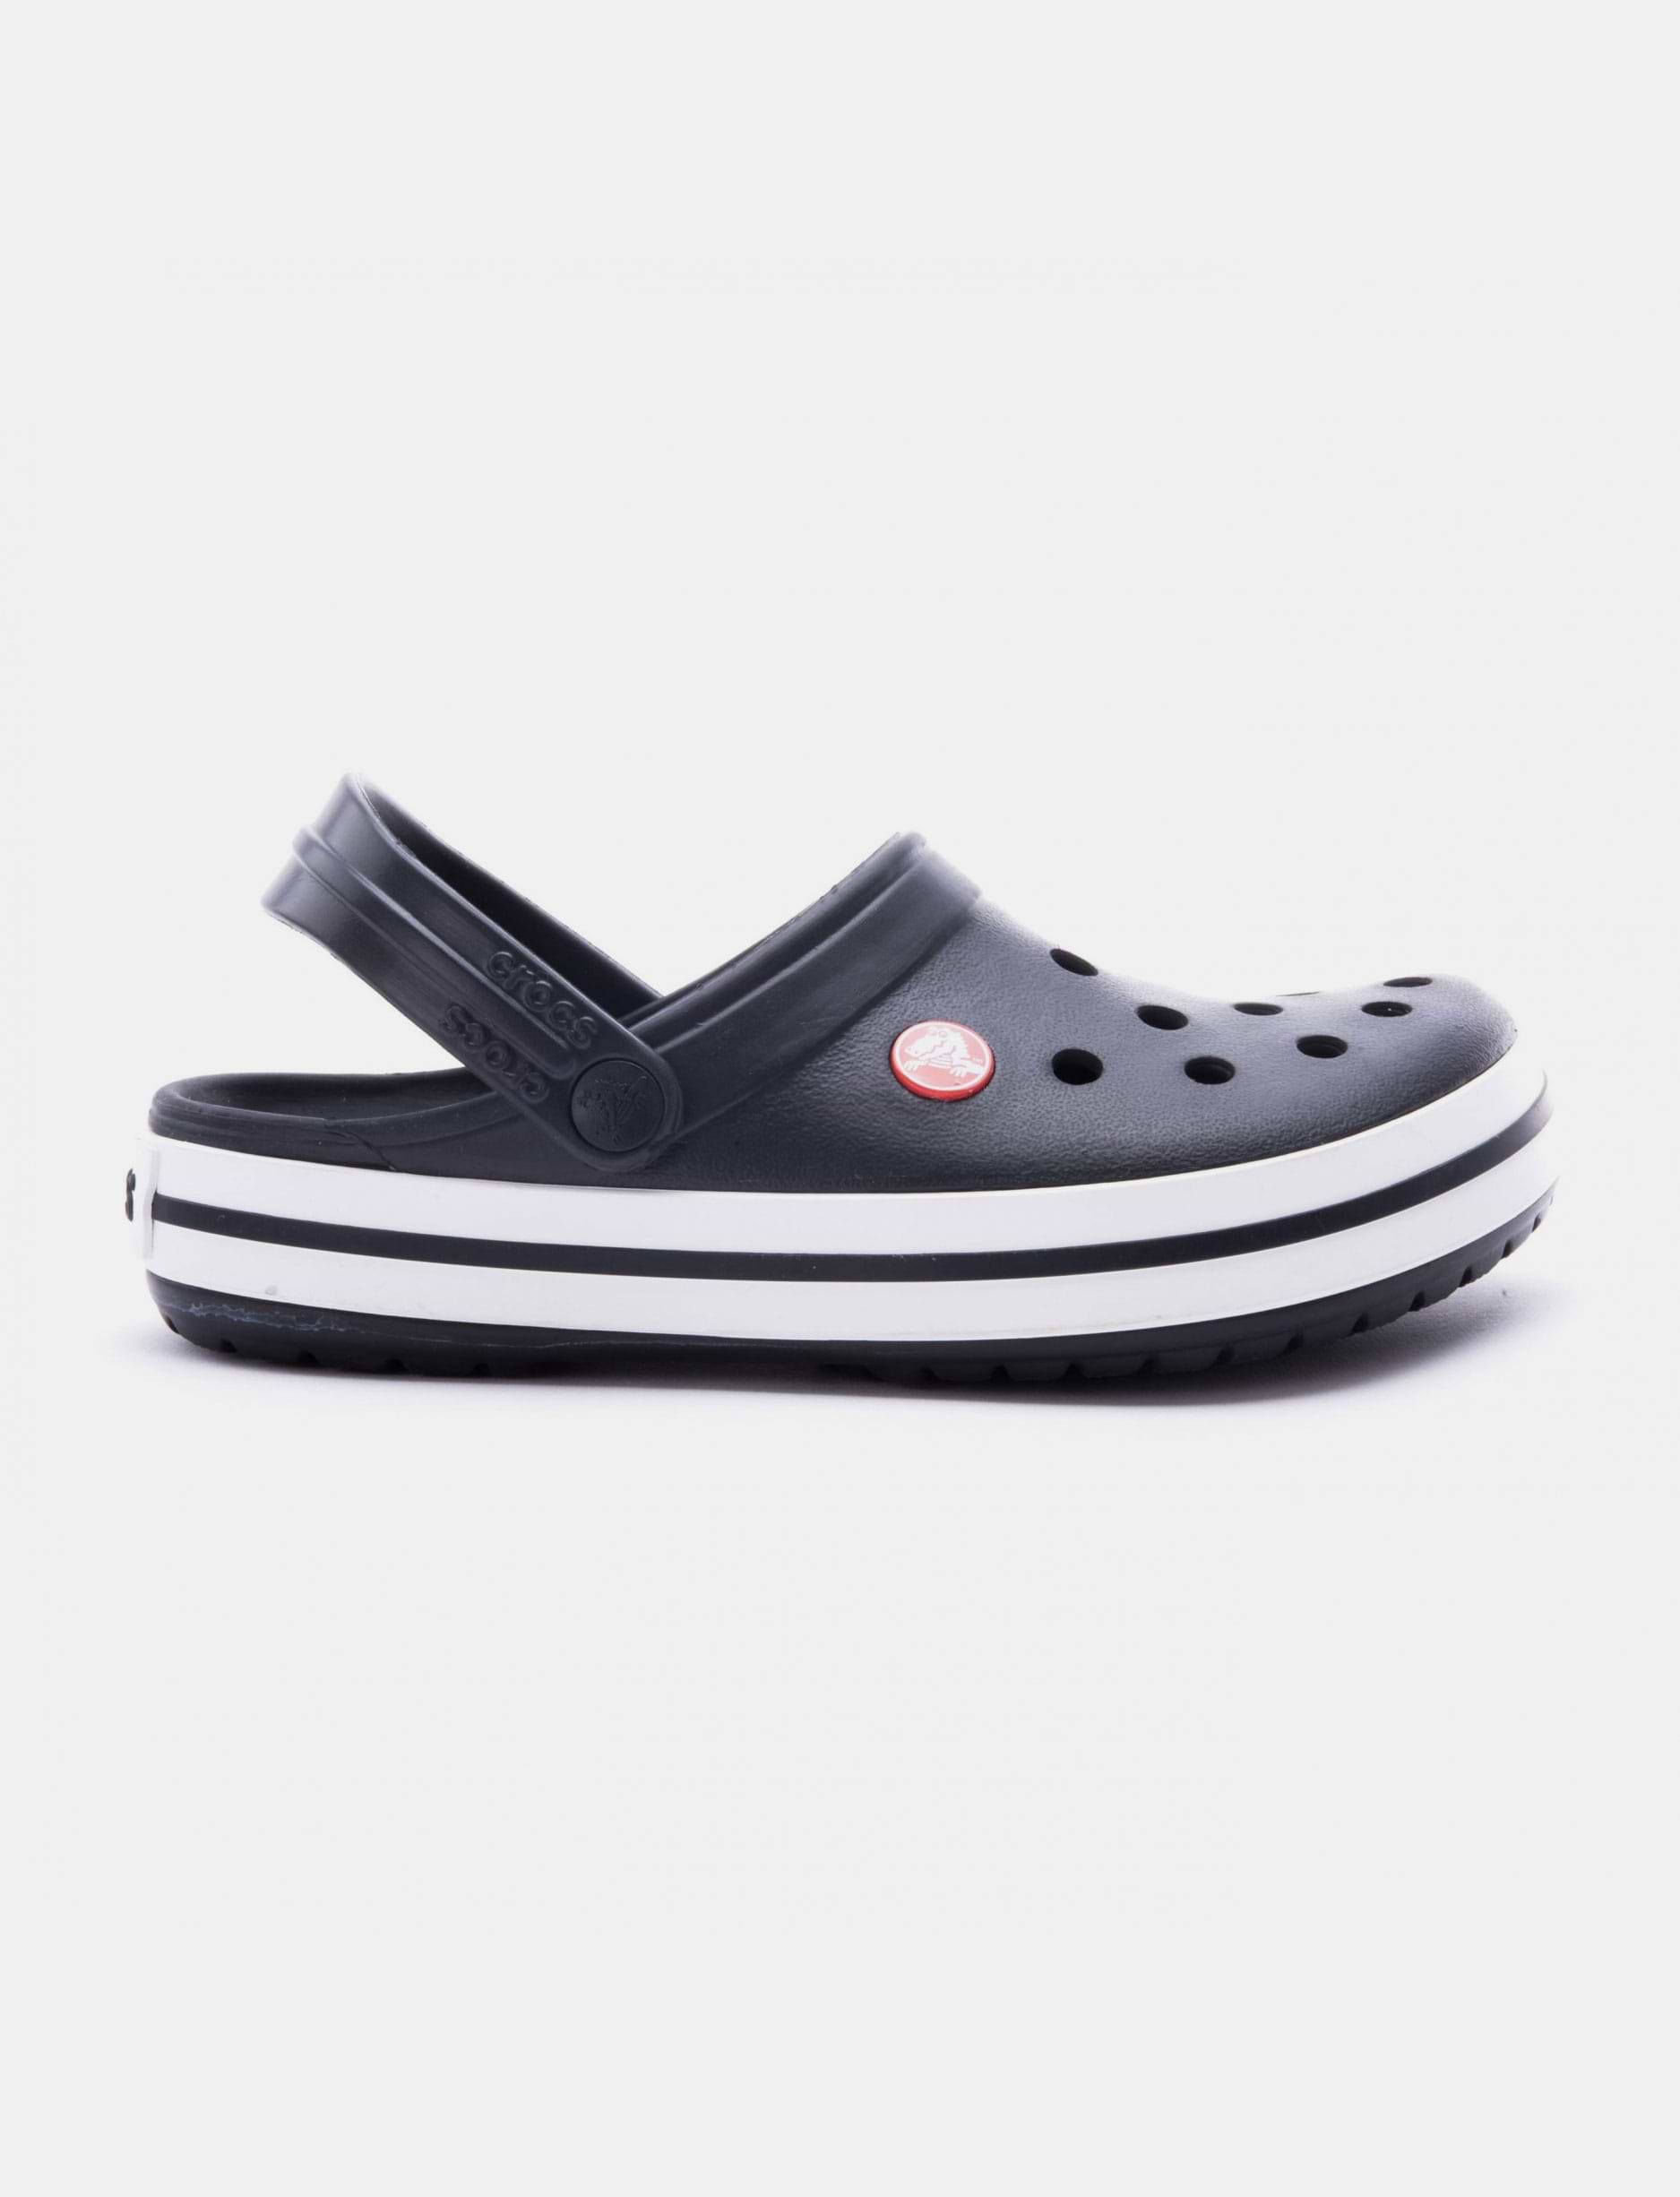 Crocs Crocband - נעלי קרוקס קרוקבנד